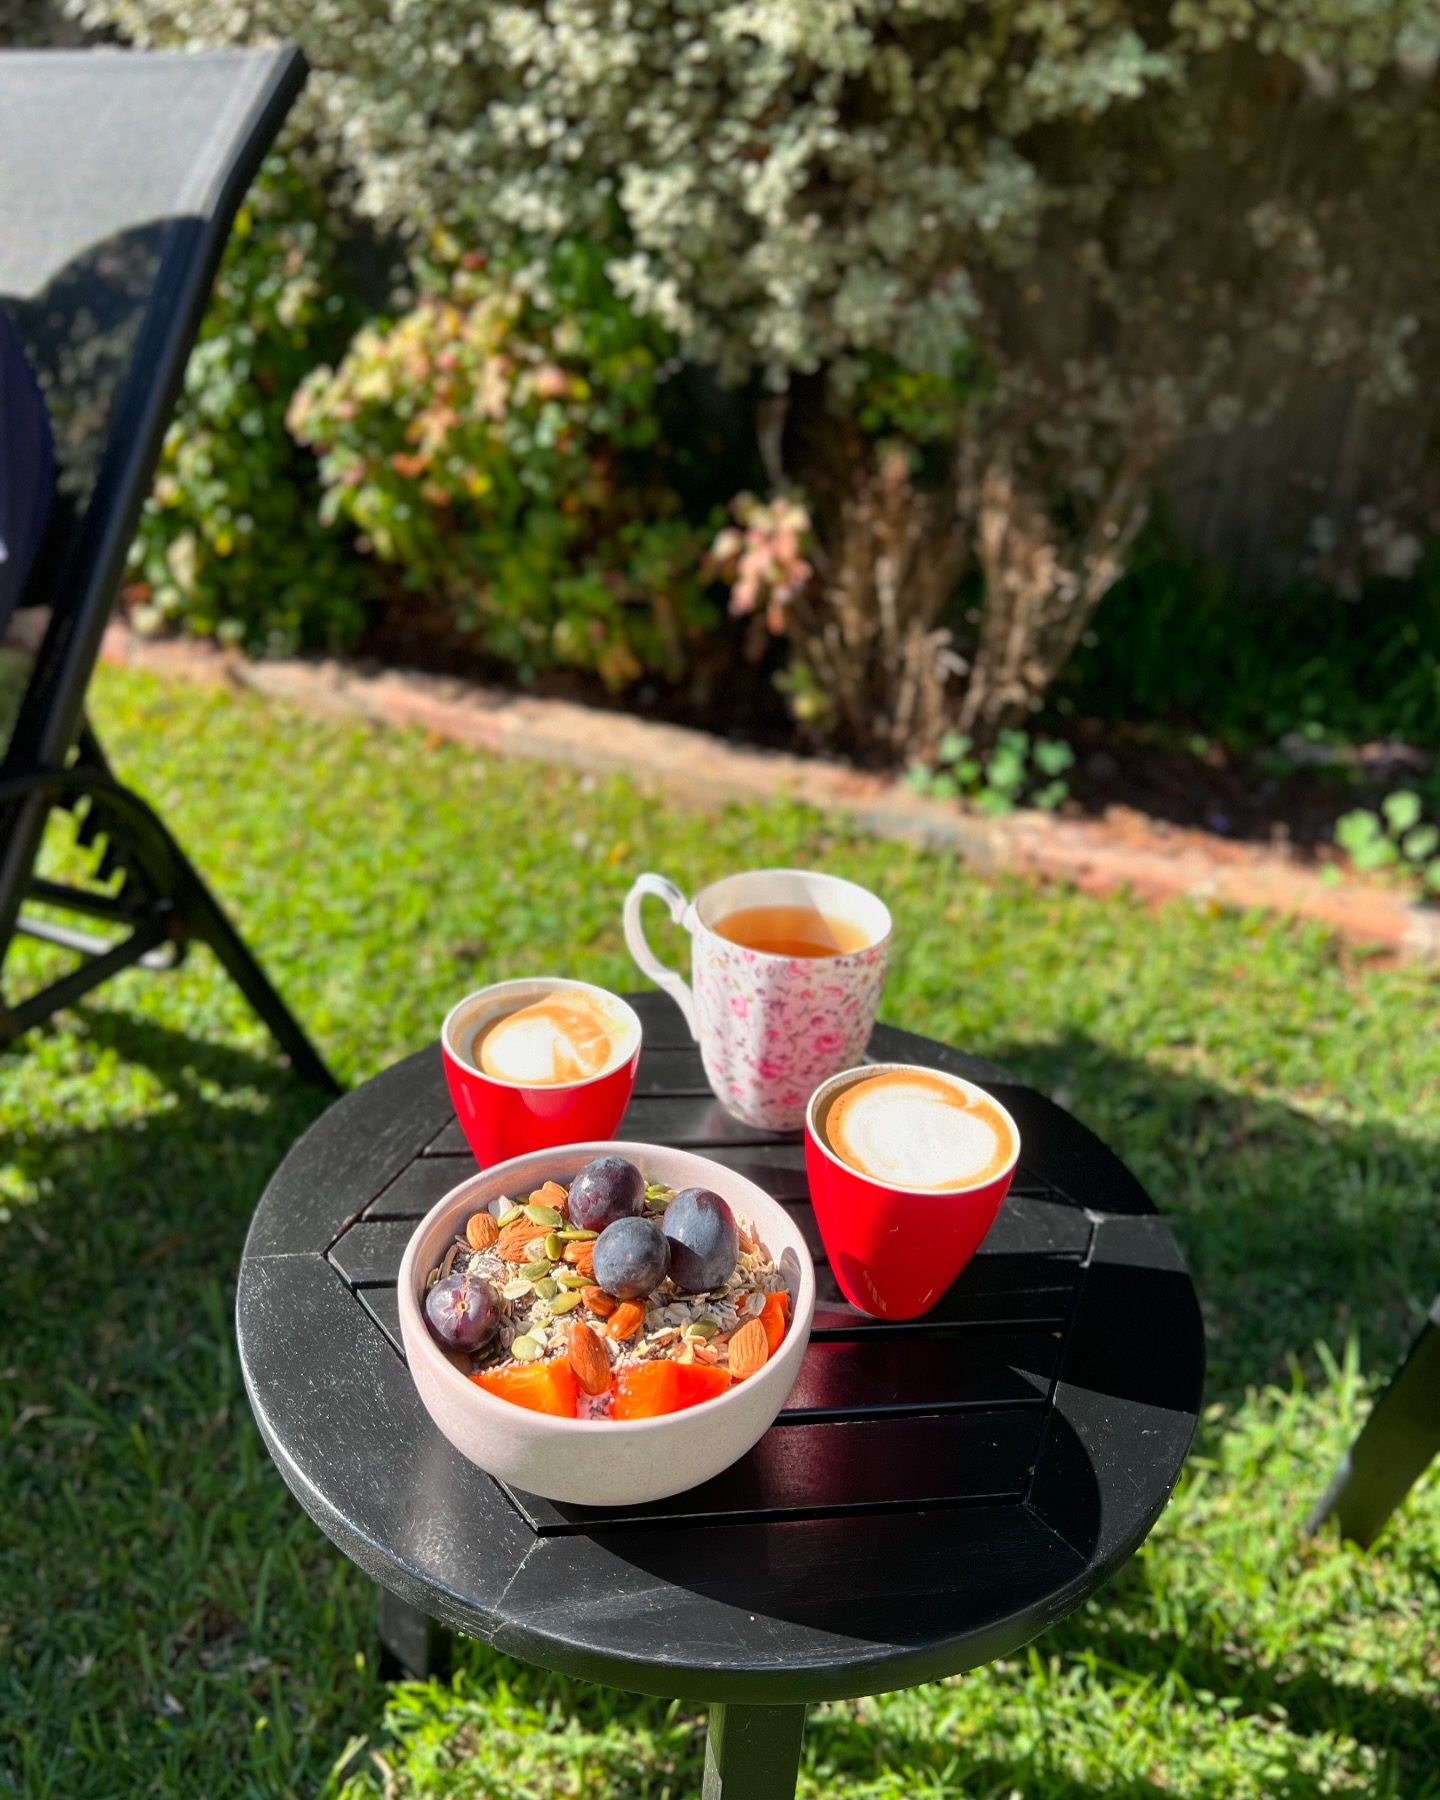 Seasonal Sundays 🌞🍇🍊🥣

#seasonalproduce #inseason #eatarainbow #breakfast #breakfasttime #aussiepersimmons #aussiegrapes #australianalmonds